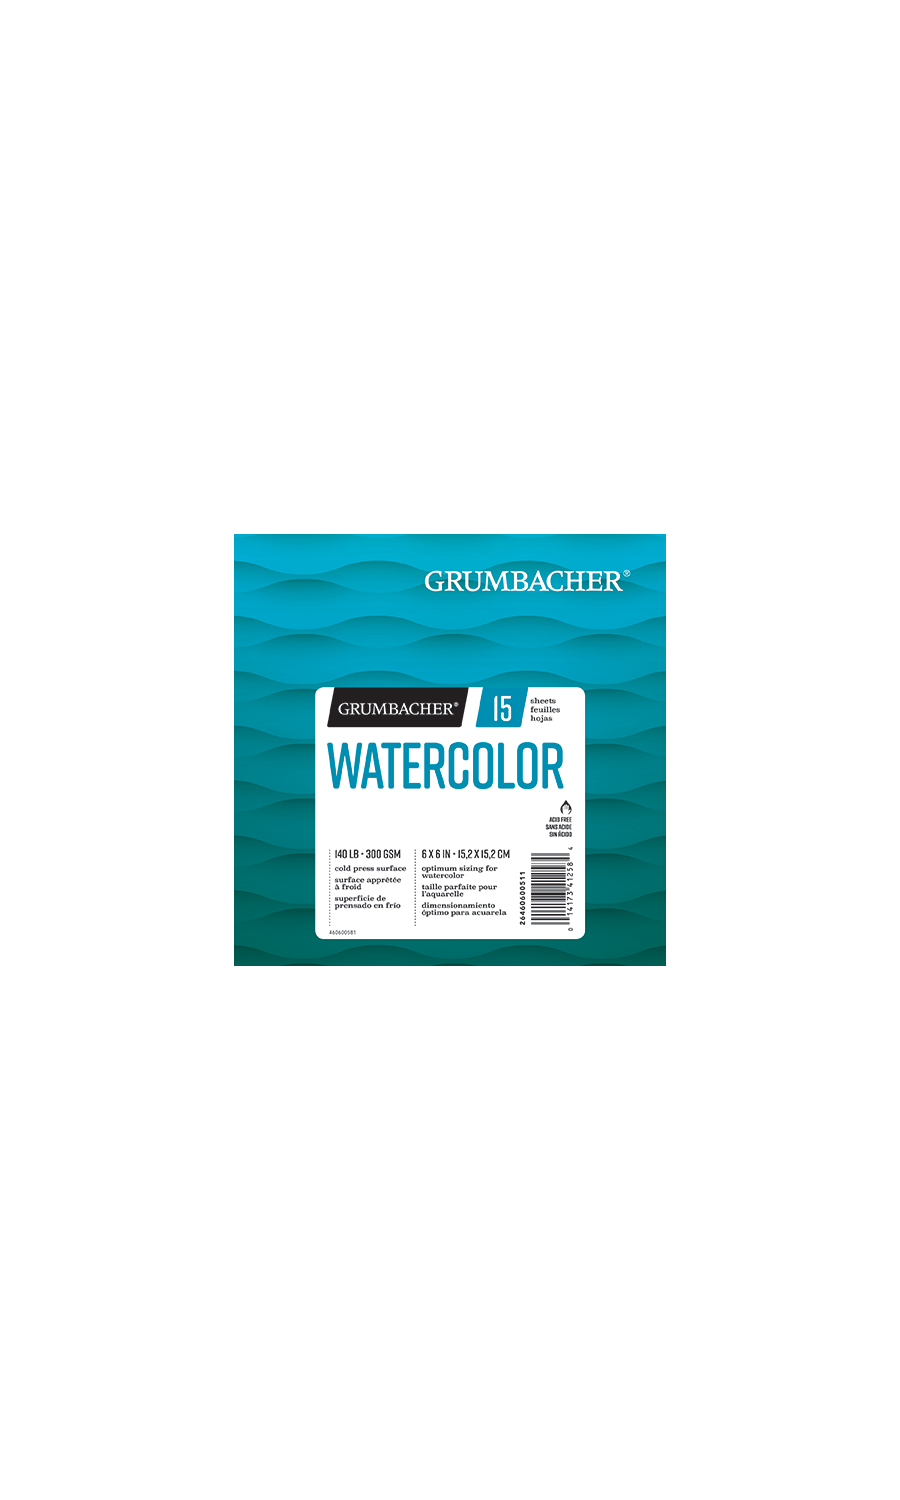 Grumbacher® Hidden Wire Watercolor Sketchbook